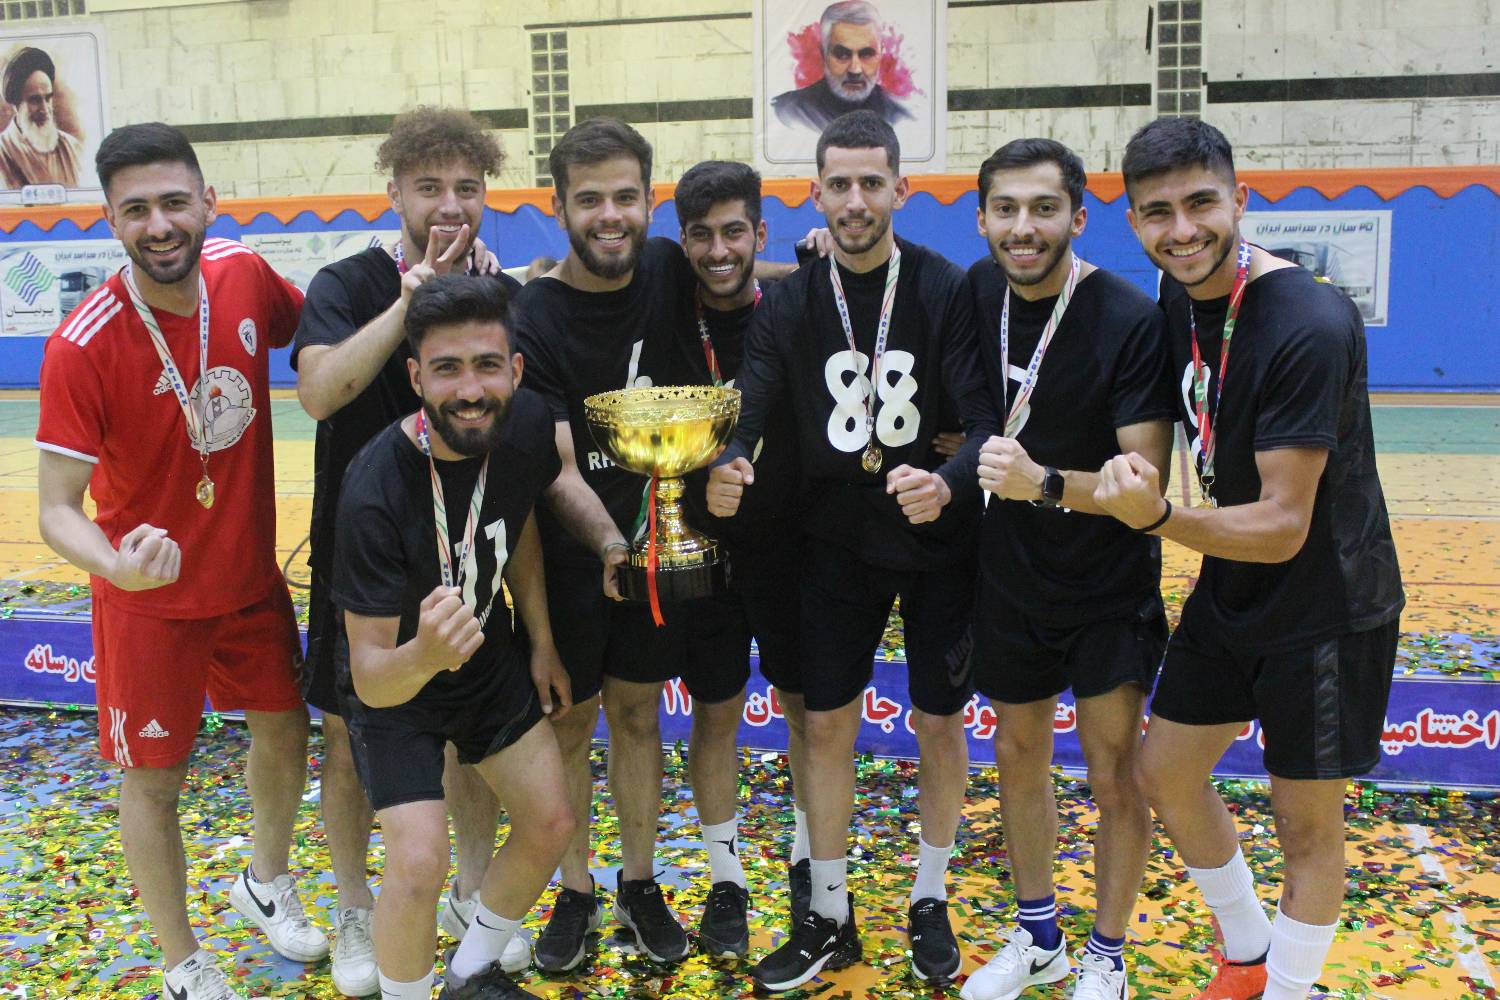 رئال گالری قهرمان مسابقات فوتسال جام رمضان فرهنگسرای رسانه شد/ پرنیان مهیار دوم و تیم مهاجران افغانستانی سوم شد